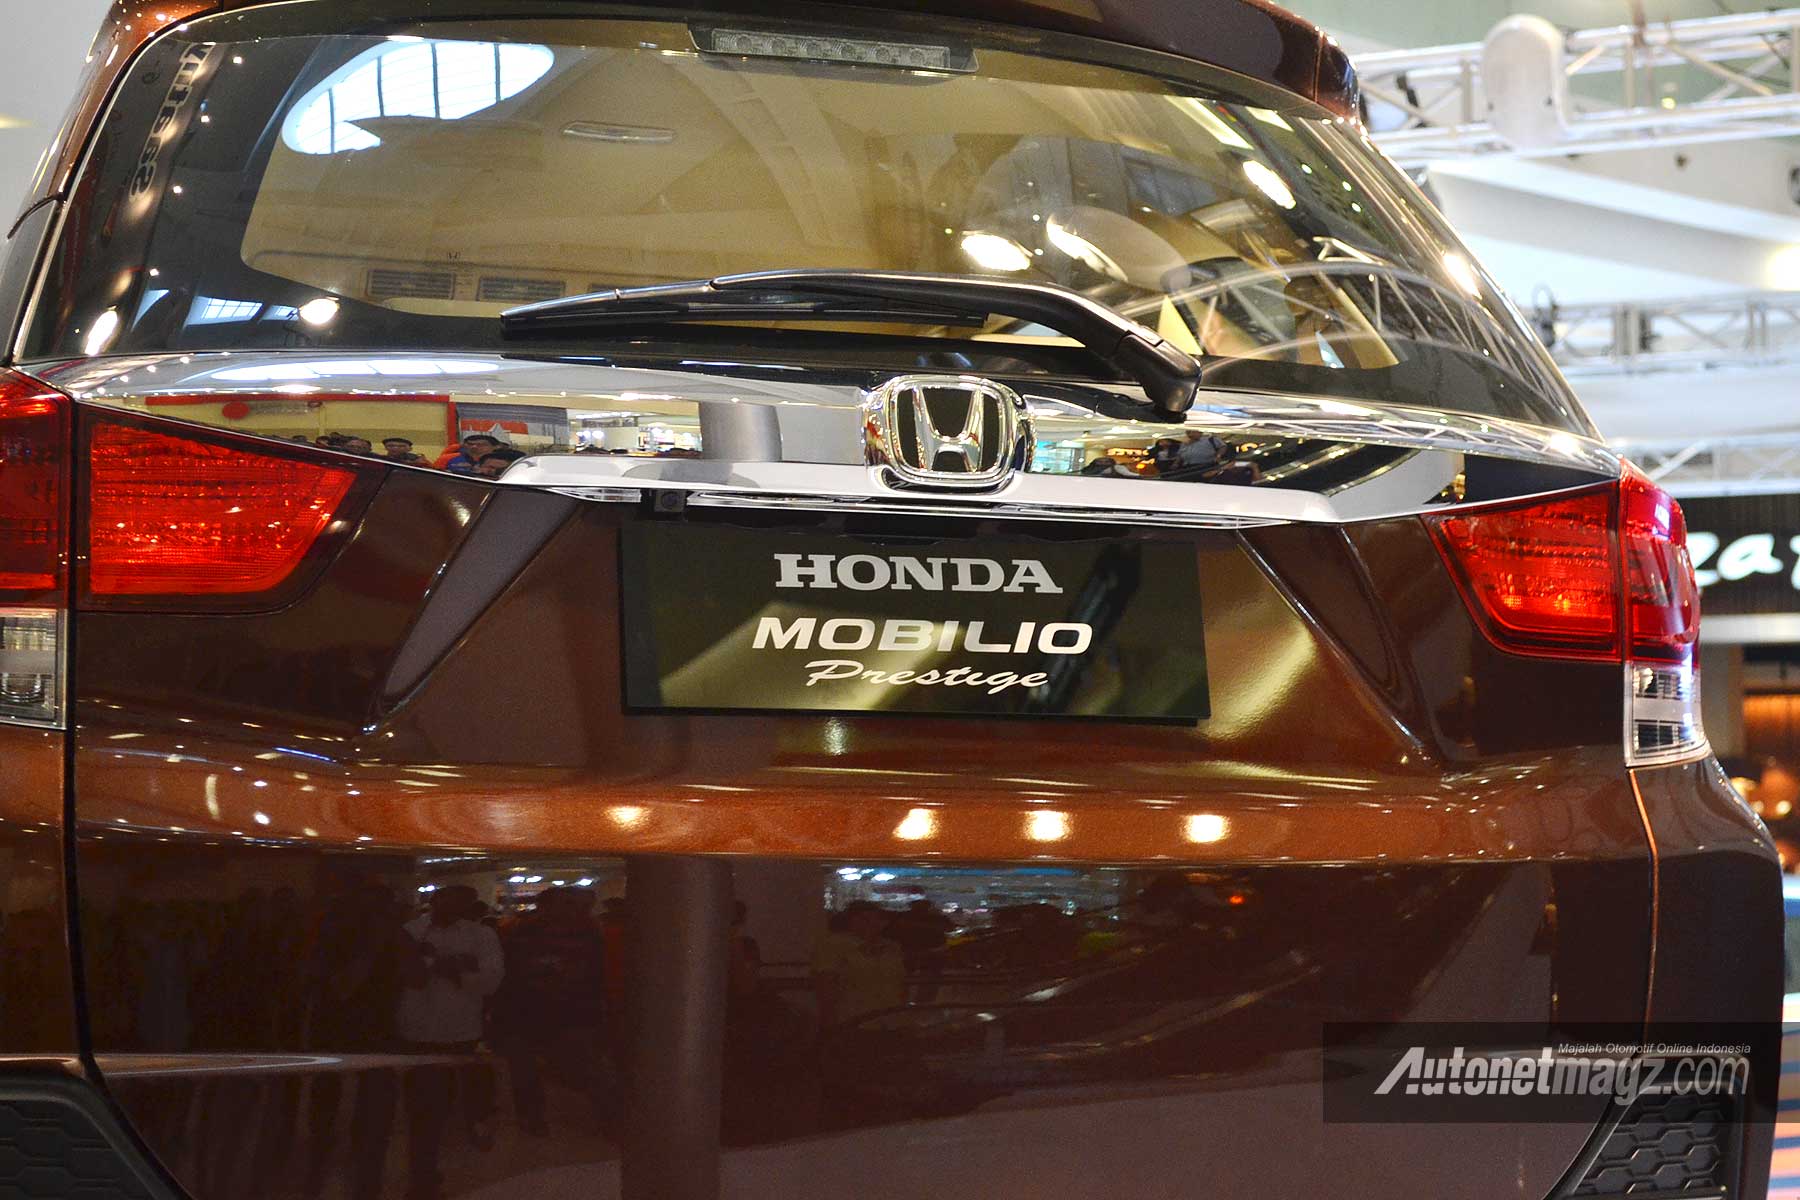 Honda, Honda Mobilio Prestige garnis krom belakang: Honda Mobilio Prestige 2014 Hari Ini Resmi Diluncurkan